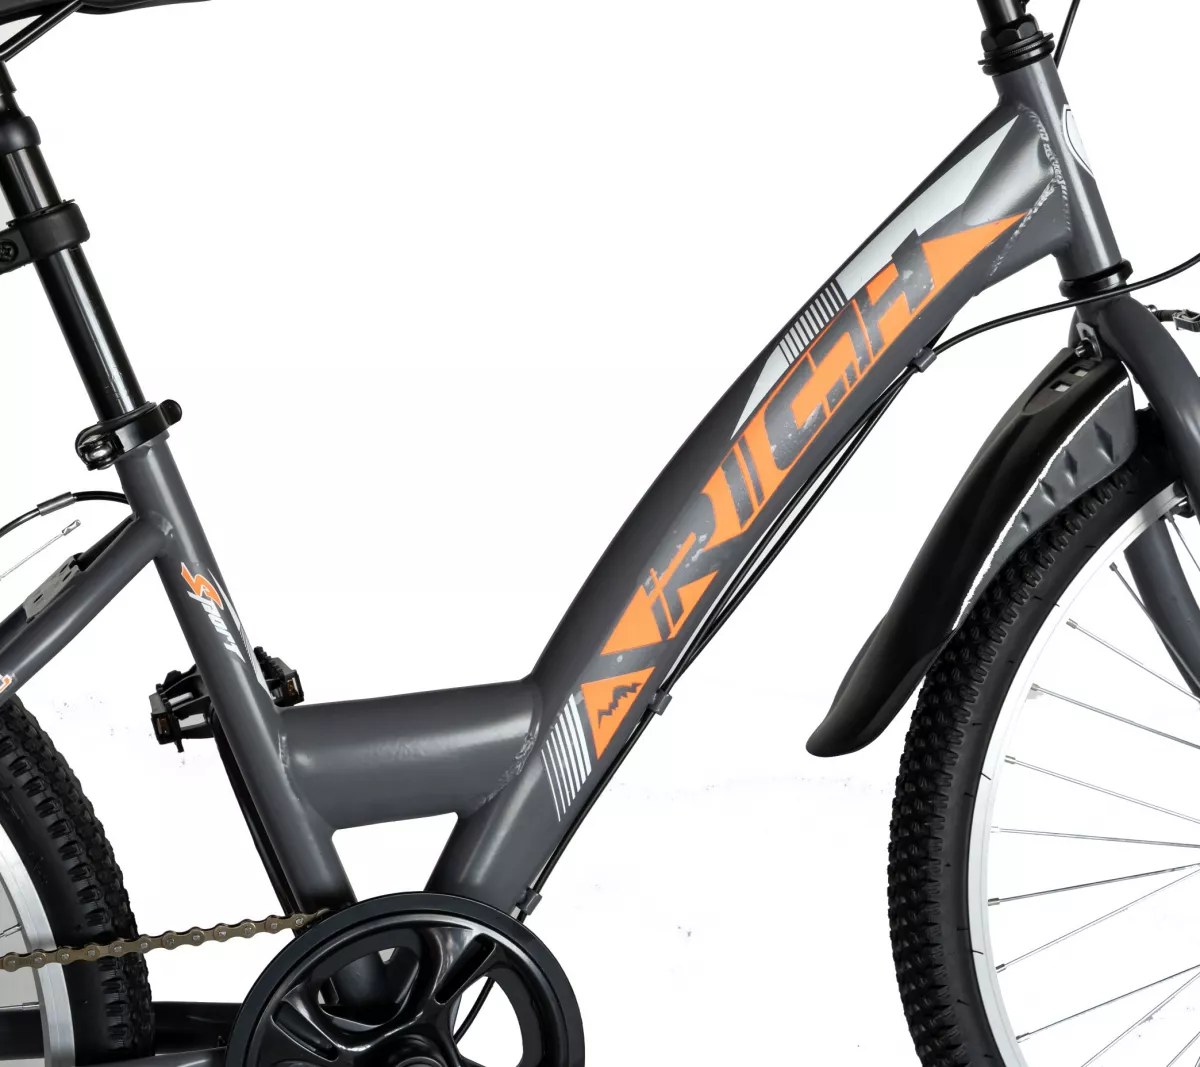 Bicicleta TREKKING 24" RICH R2430A, 6 viteze, culoare gri/portocaliu